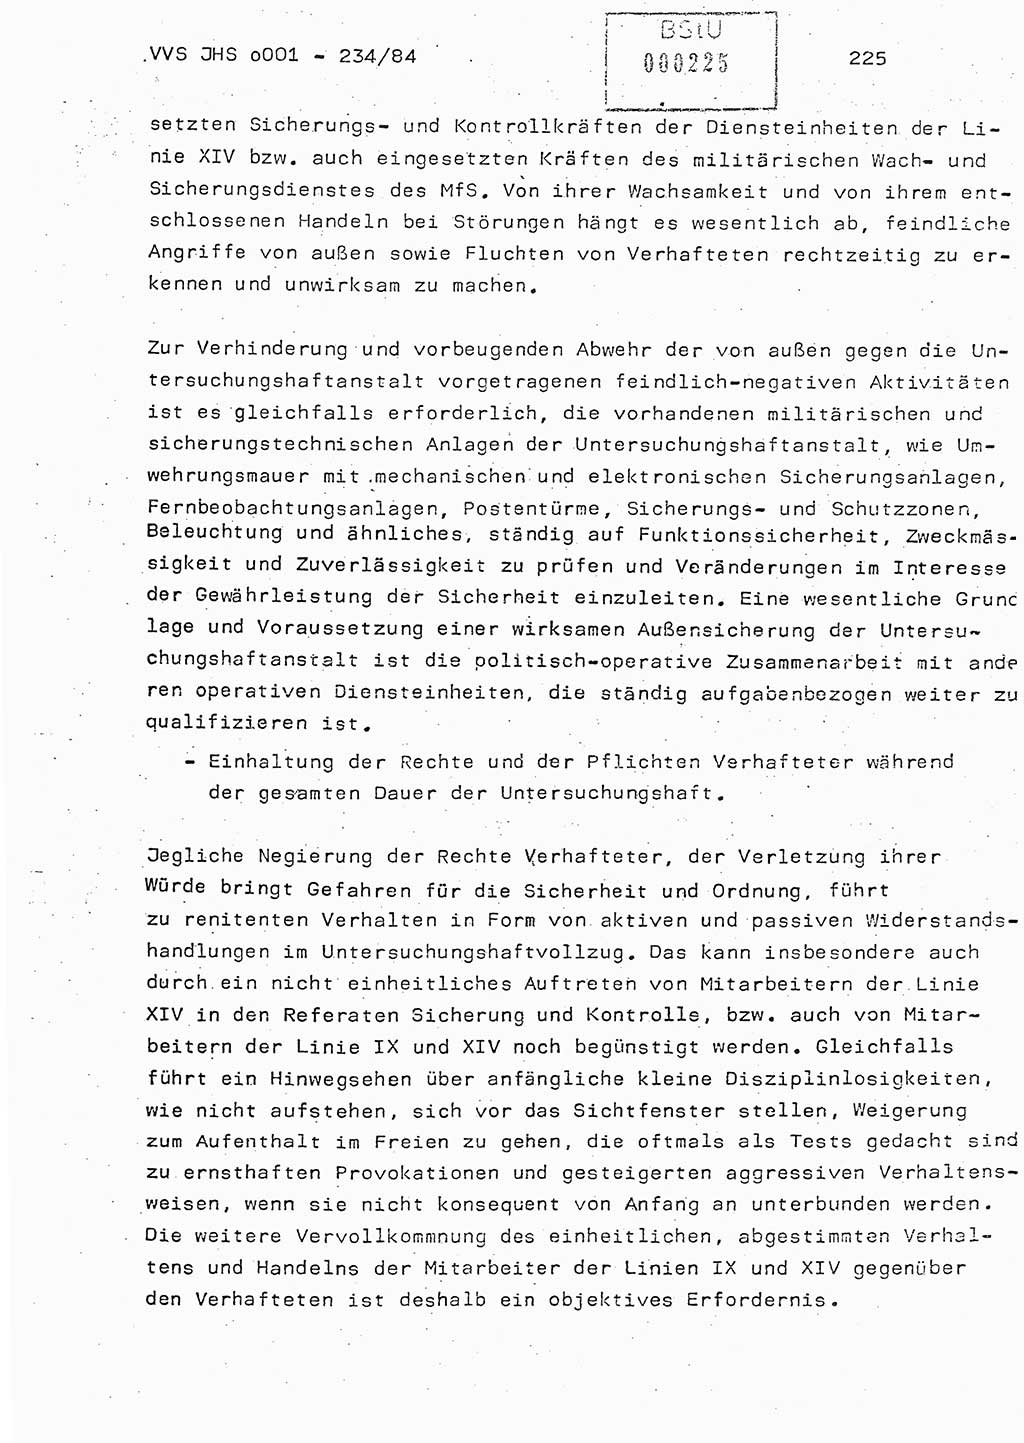 Dissertation Oberst Siegfried Rataizick (Abt. ⅩⅣ), Oberstleutnant Volkmar Heinz (Abt. ⅩⅣ), Oberstleutnant Werner Stein (HA Ⅸ), Hauptmann Heinz Conrad (JHS), Ministerium für Staatssicherheit (MfS) [Deutsche Demokratische Republik (DDR)], Juristische Hochschule (JHS), Vertrauliche Verschlußsache (VVS) o001-234/84, Potsdam 1984, Seite 225 (Diss. MfS DDR JHS VVS o001-234/84 1984, S. 225)